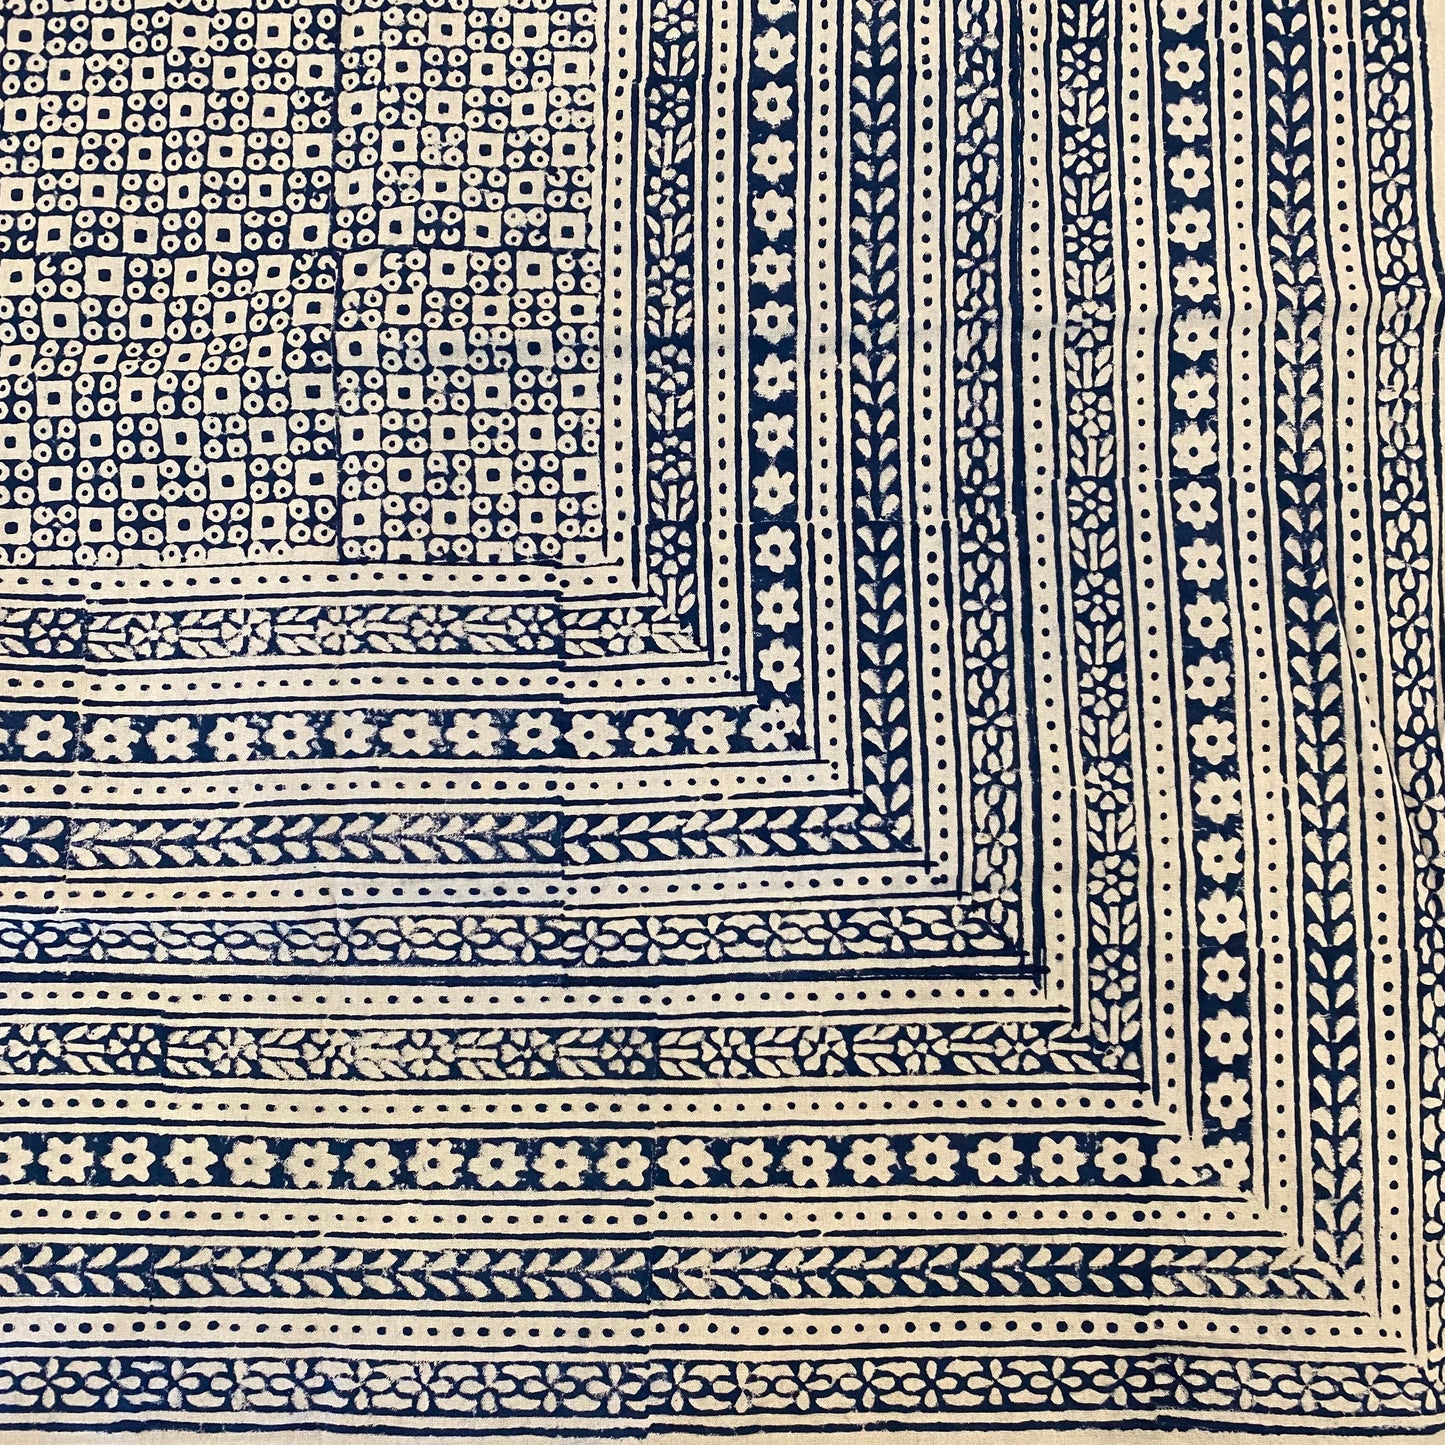 Nona Blue Tablecloth- 60” x 90”